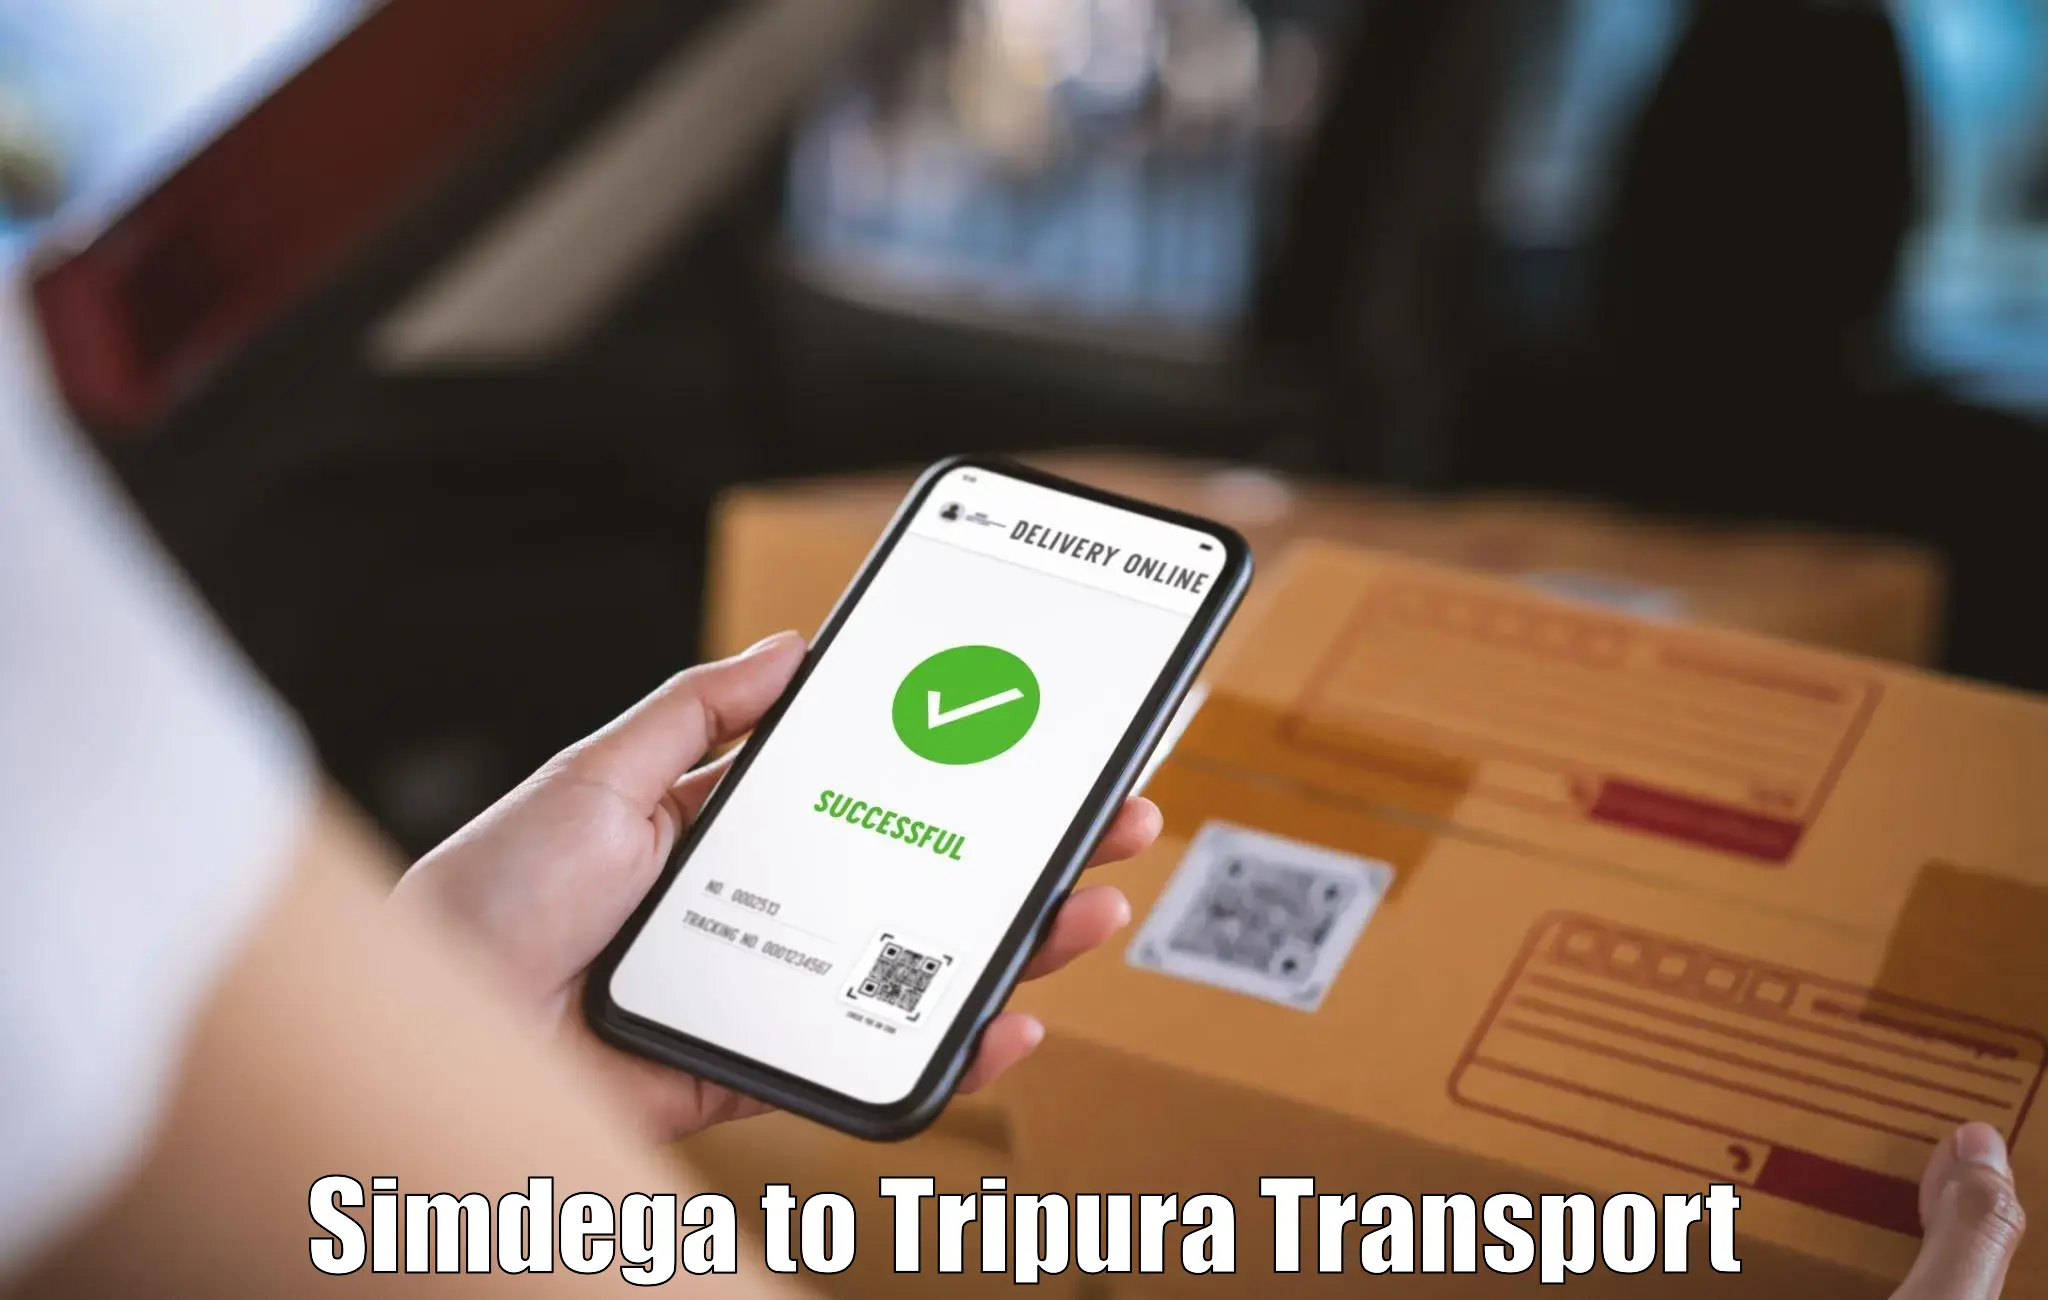 All India transport service Simdega to Agartala